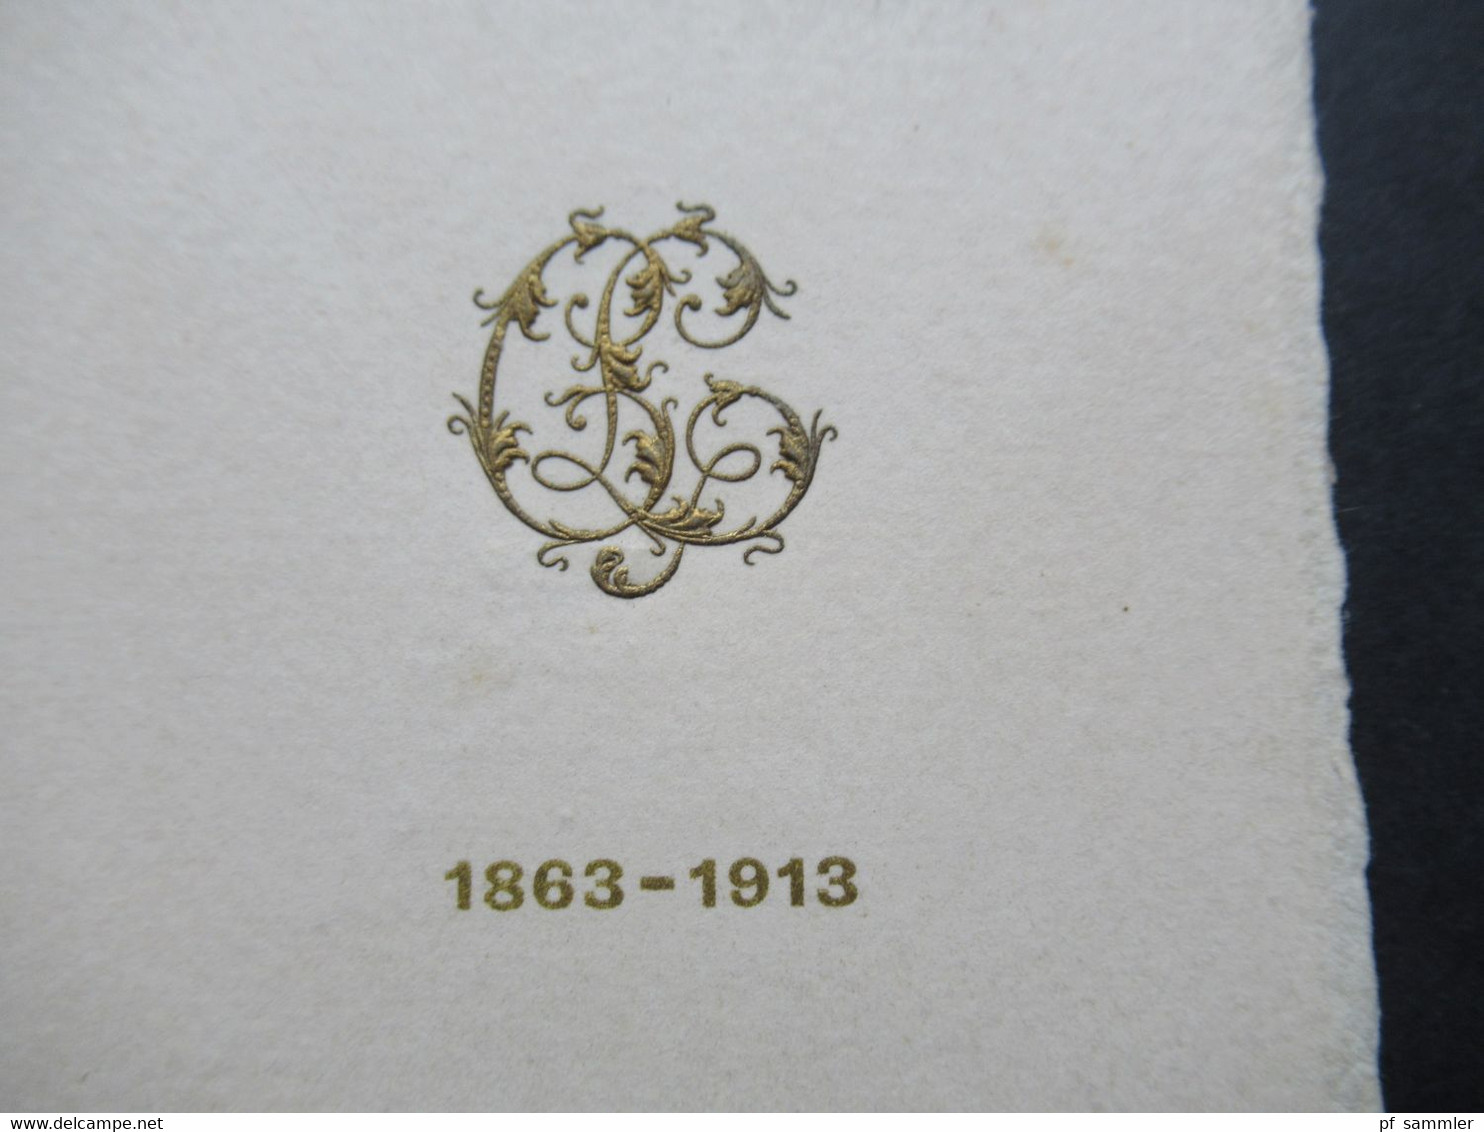 Frankreich 1863 - 1913 Einladungskarte Menu Du Diner Chateau De Madrid Spreisekarte / Weinkarte Moet & Chandon 1863 - Historische Dokumente